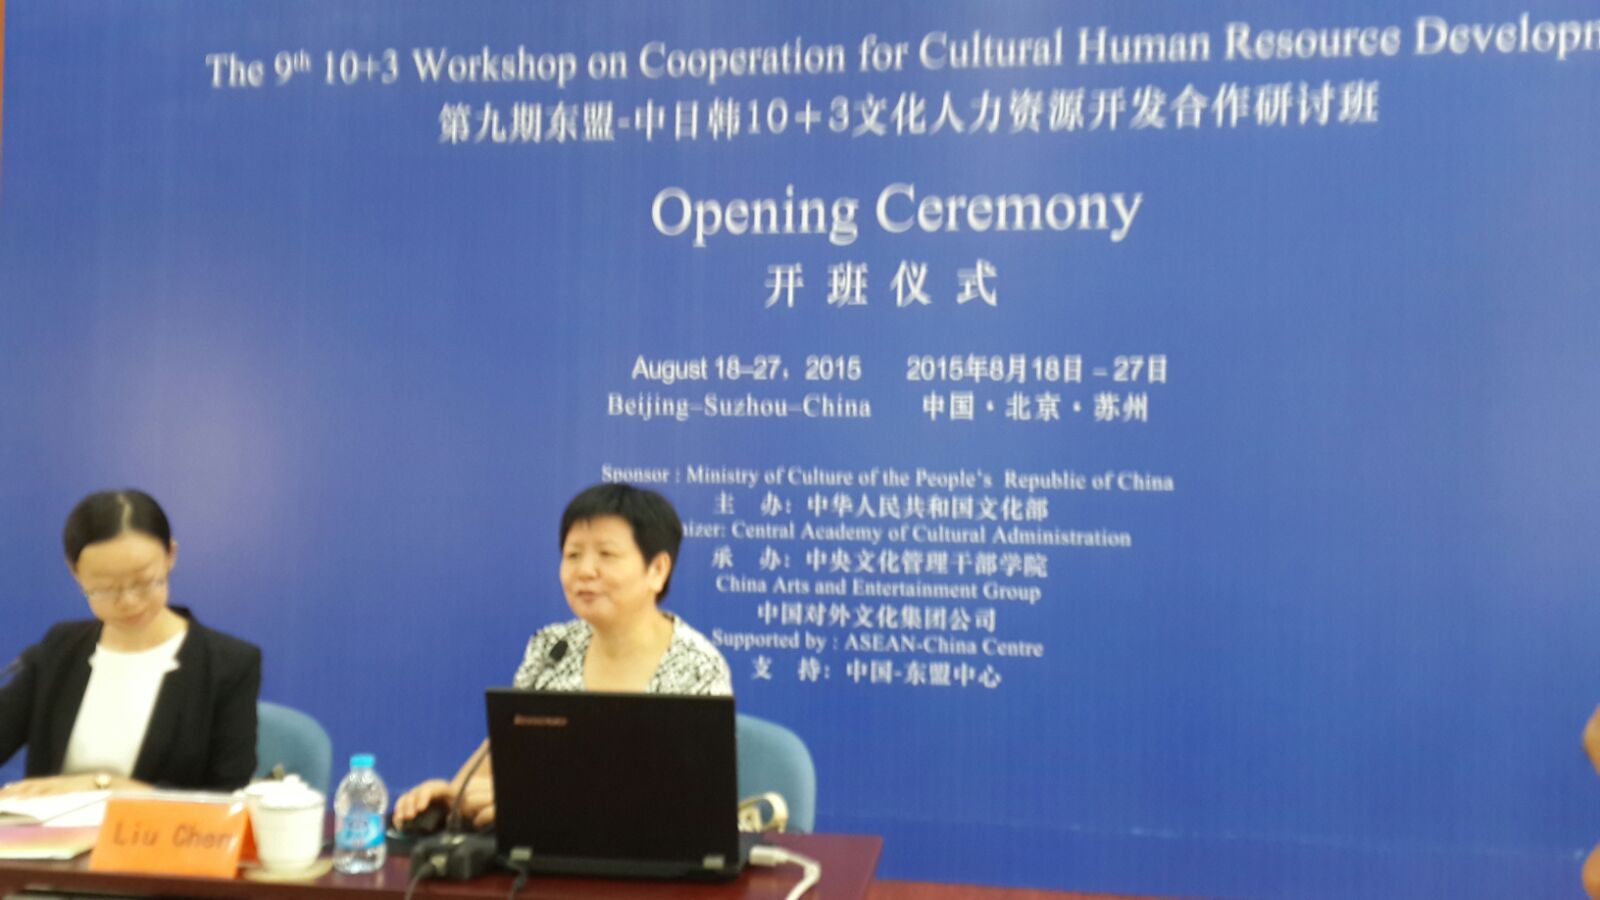 Prof. Liu Chen Memberikan Kuliah tentang Sistem Layanan Masyarakat